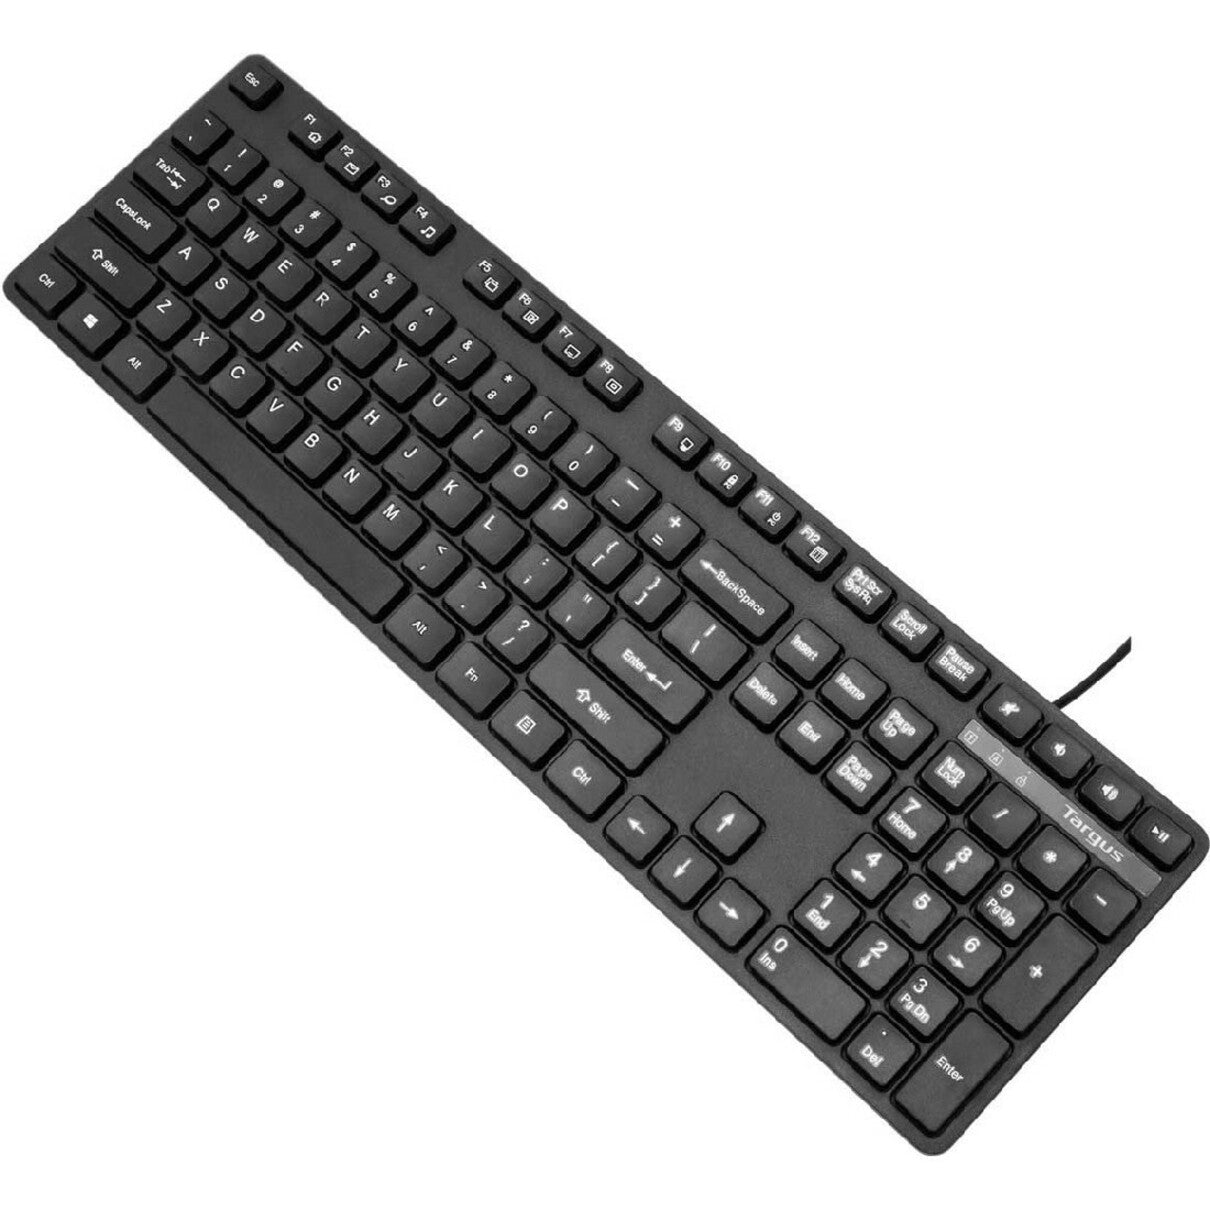 Targus AKB30US USB Wired Keyboard, Ergonomic QWERTY Layout, Black